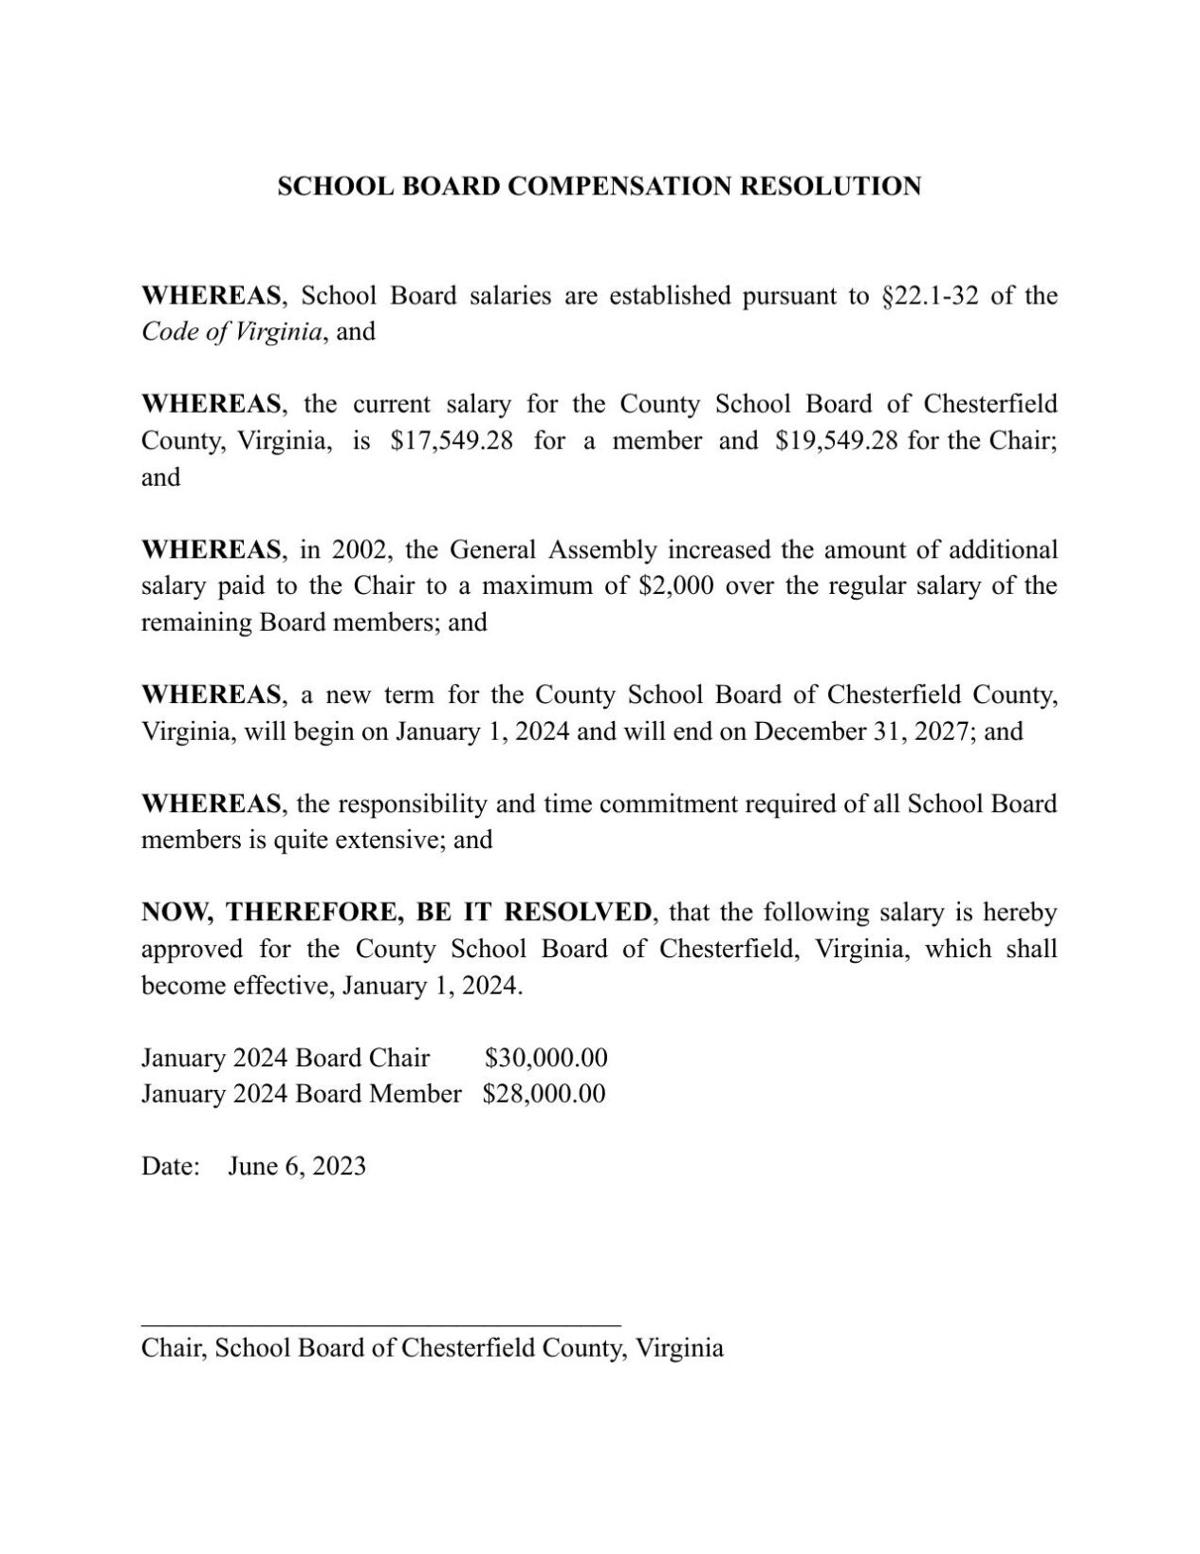 ATTACHMENT A - School Board Compensation Resolution.pdf